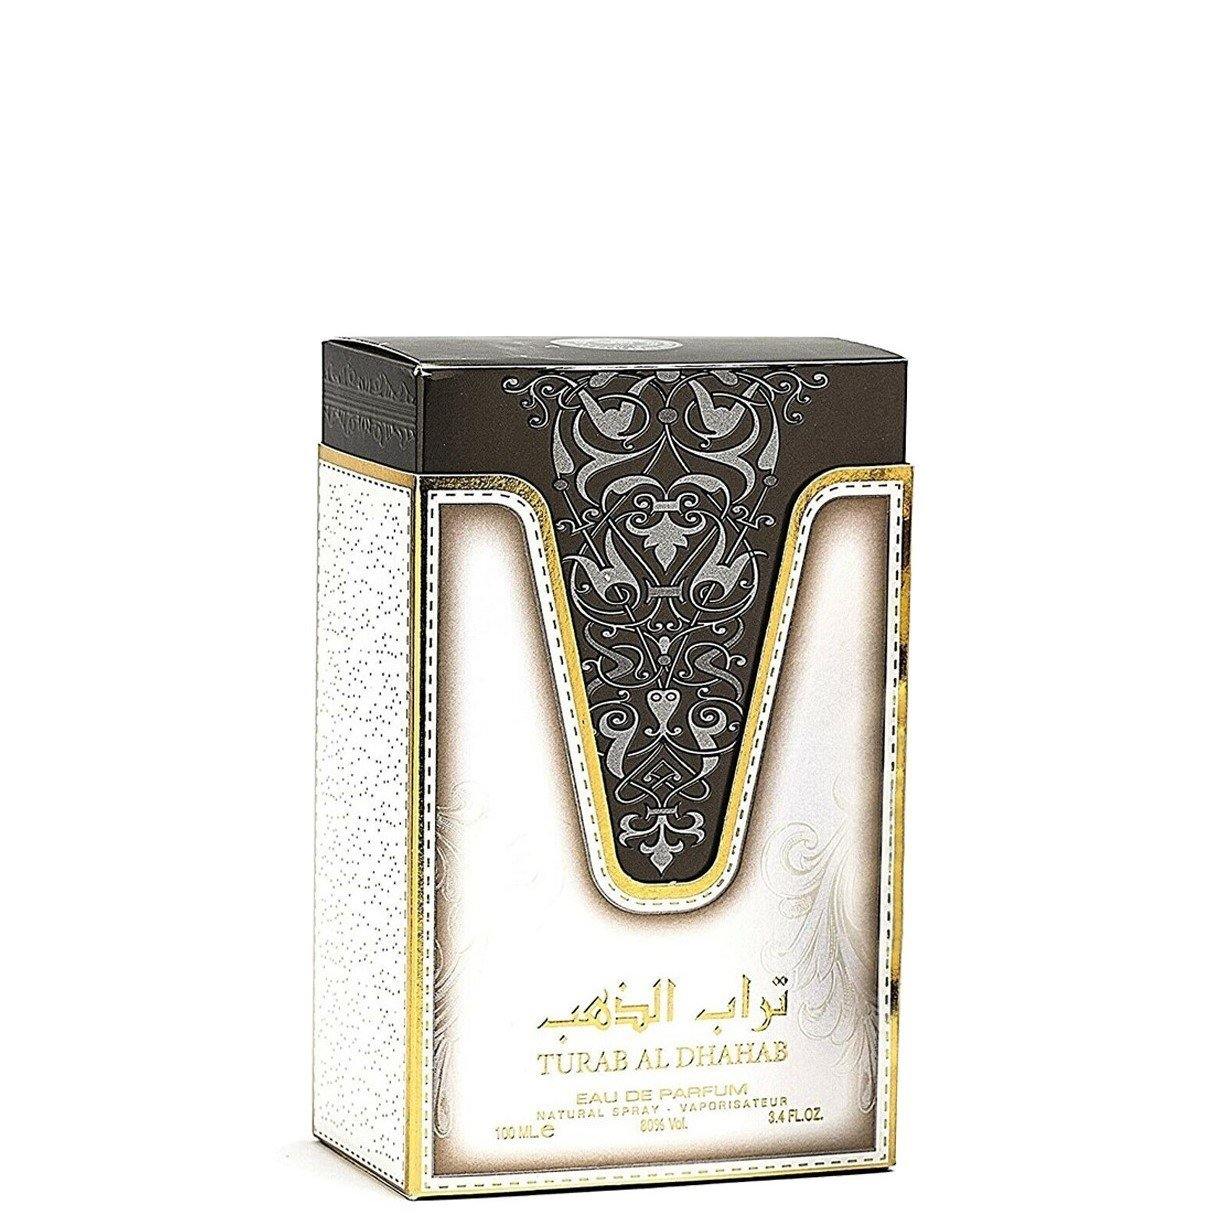 100 ml Eau de Parfum Turab Al Dhahab cu Arome de Mosc Dulce pentru Bărbați și Femei - Galeria de Bijuterii